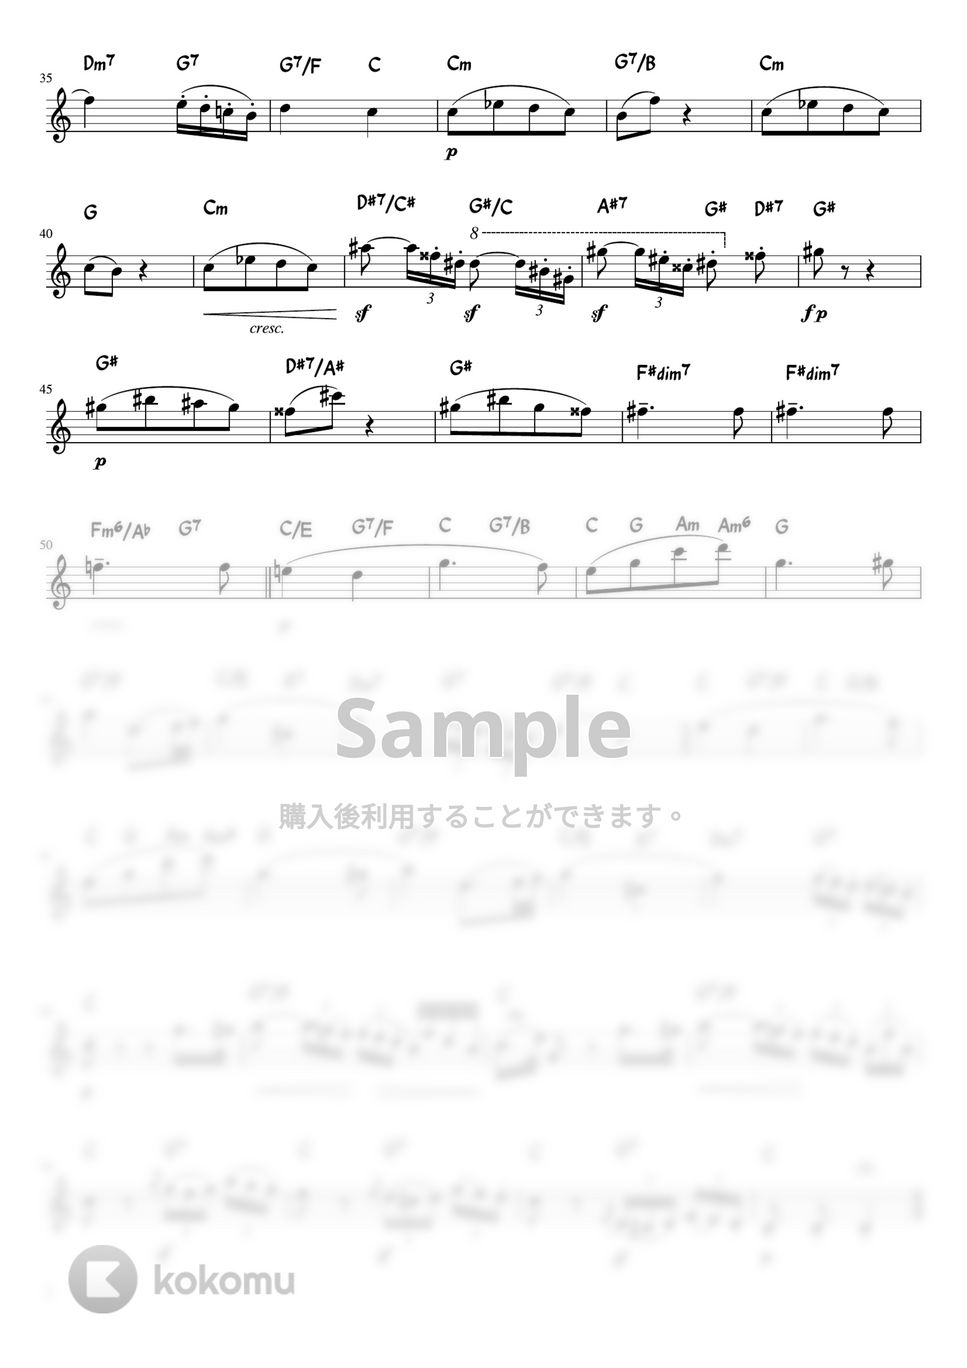 ショパン - 告別のワルツ (C・メロディーコード) by pfkaori